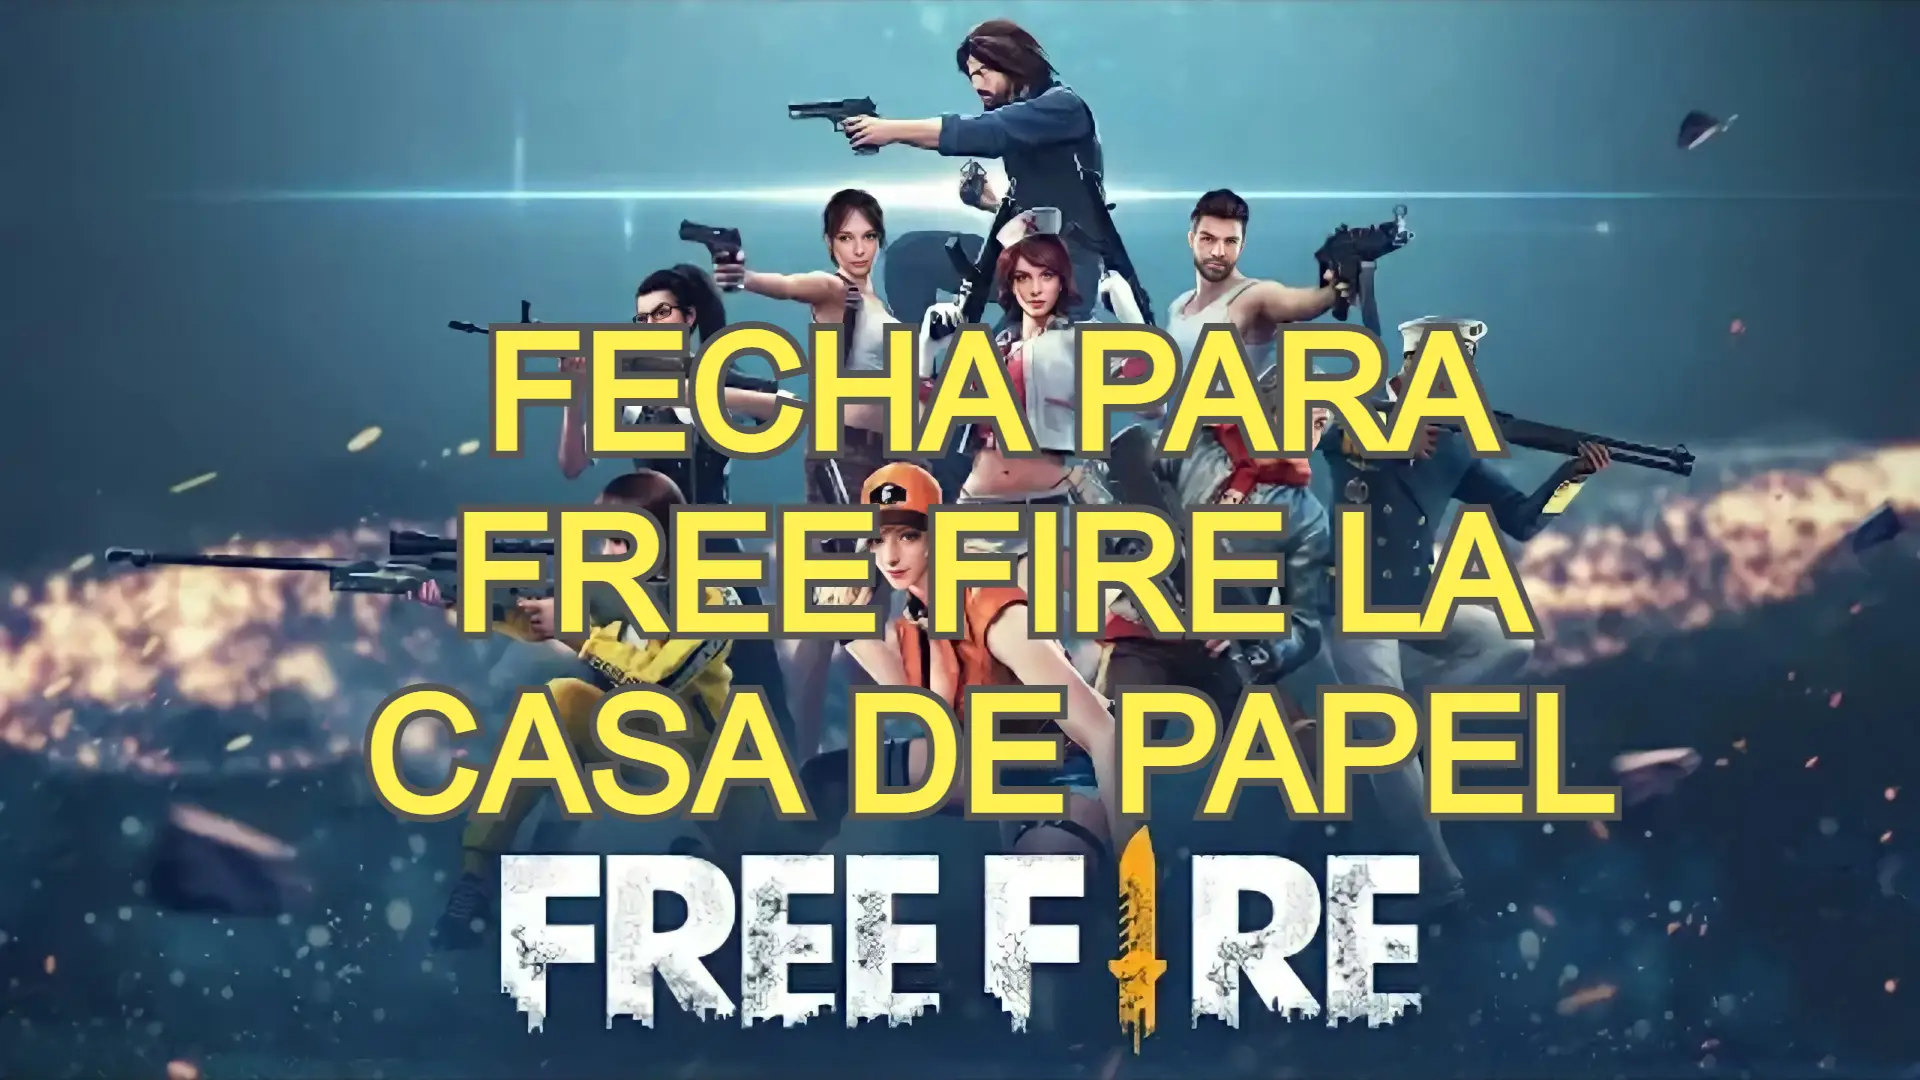 Free fire la casa de papel